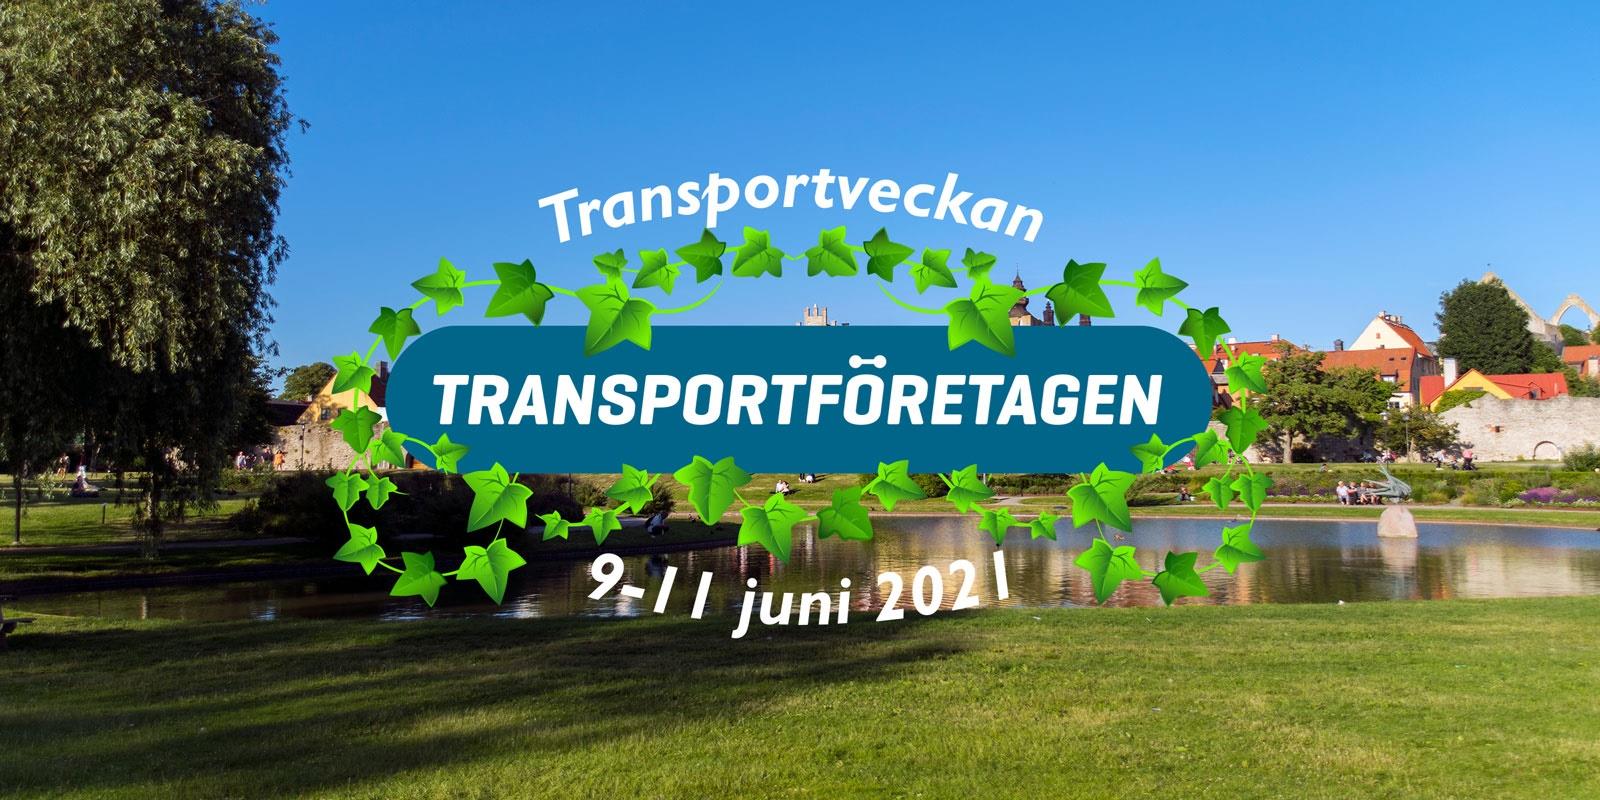 Transportföretagen arrangerar Transportveckan 9-11 juni